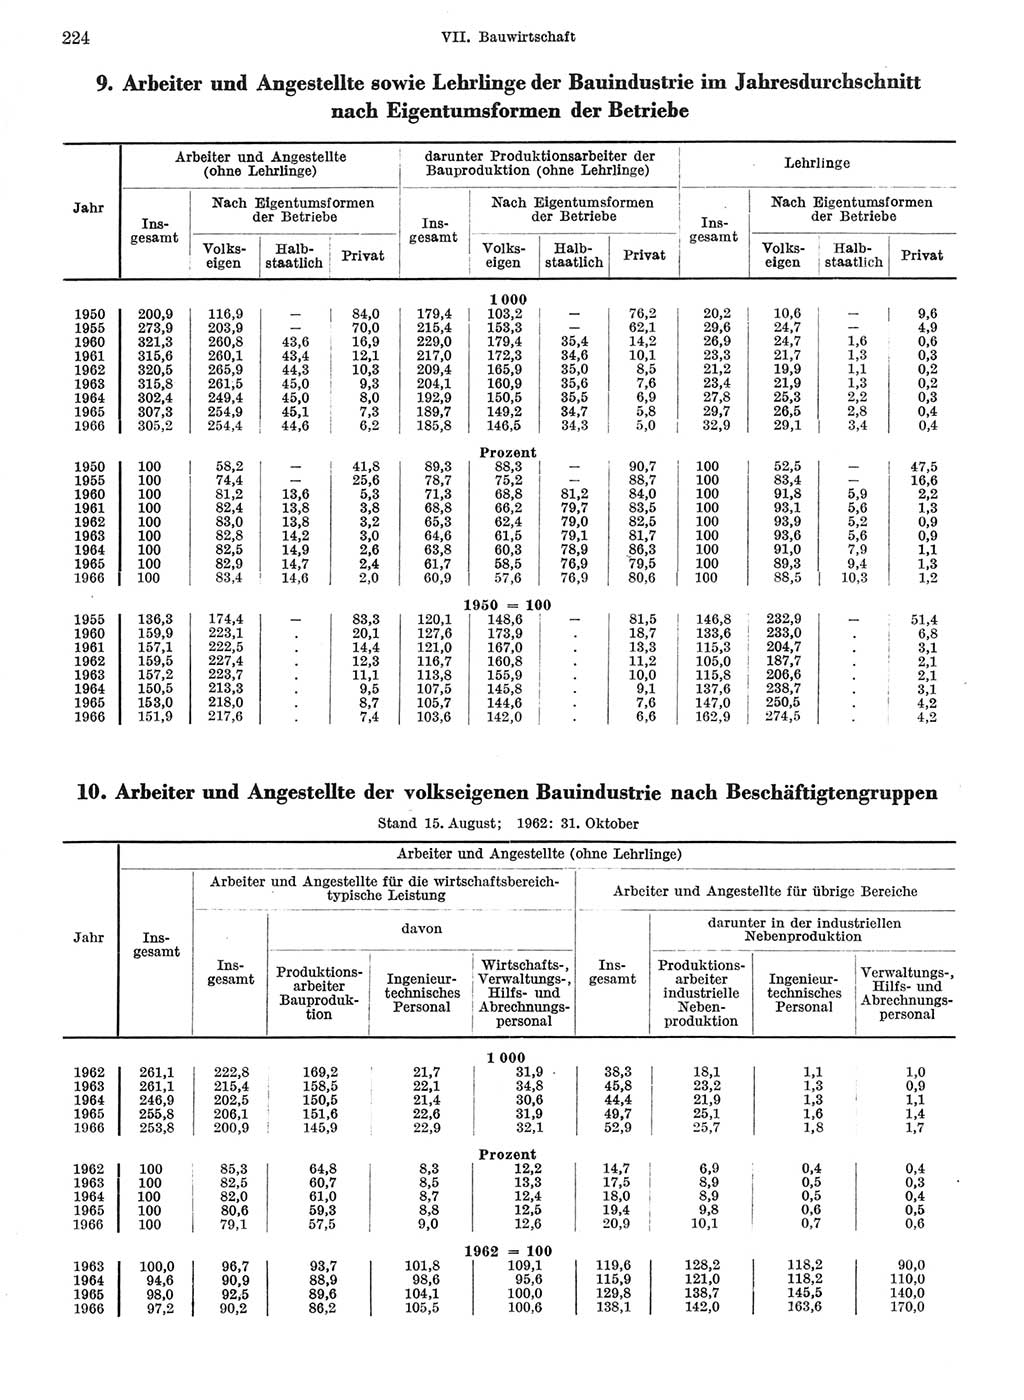 Statistisches Jahrbuch der Deutschen Demokratischen Republik (DDR) 1967, Seite 224 (Stat. Jb. DDR 1967, S. 224)